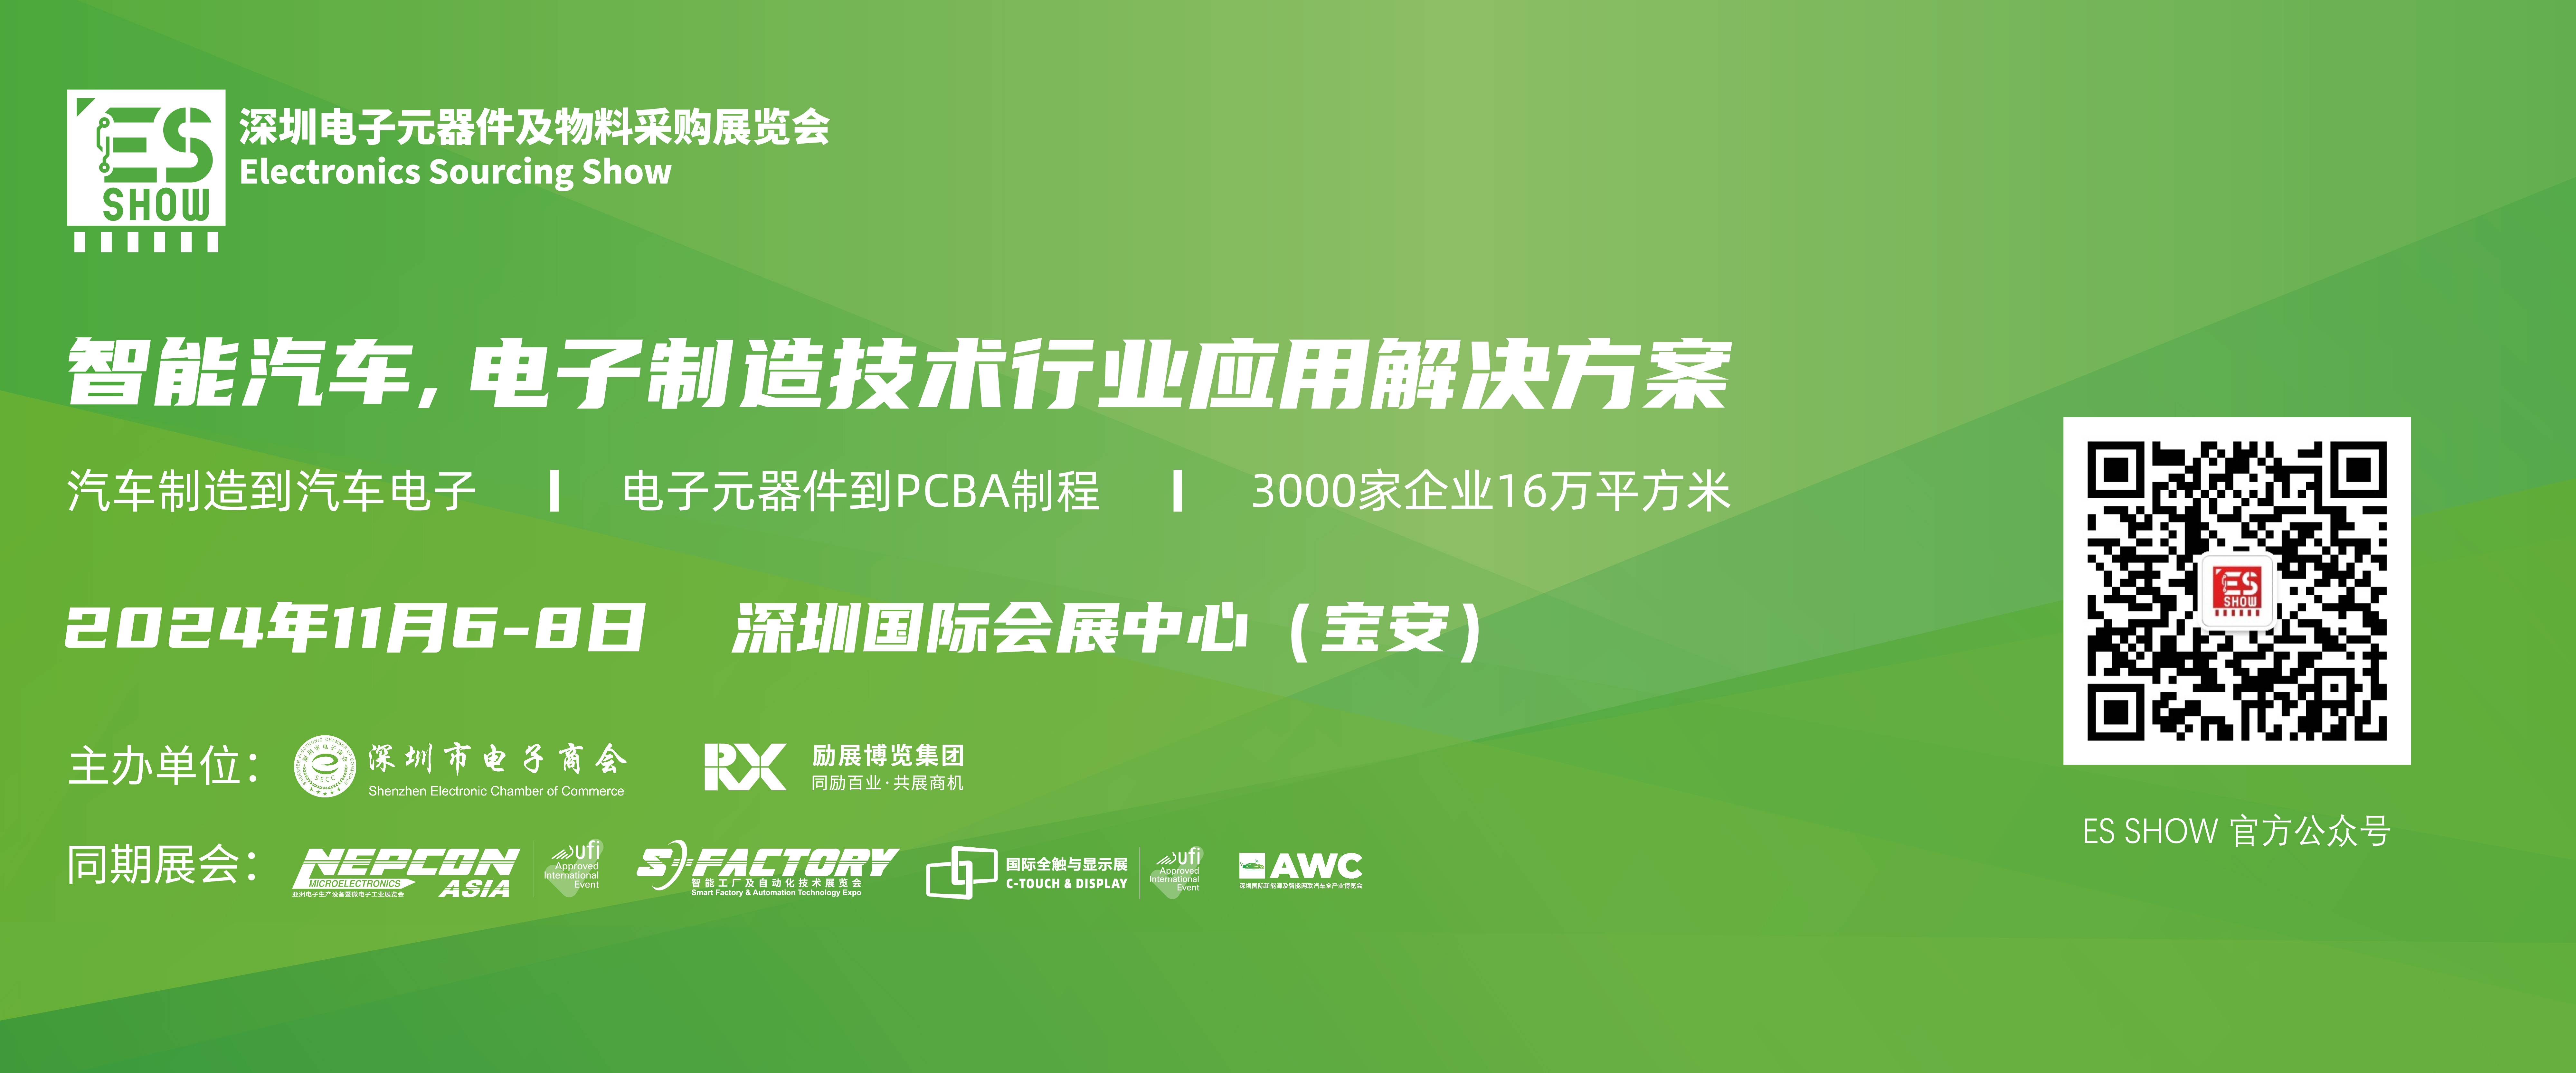 英特尔 GPU 深圳电子展 华南电子展 中国电子展